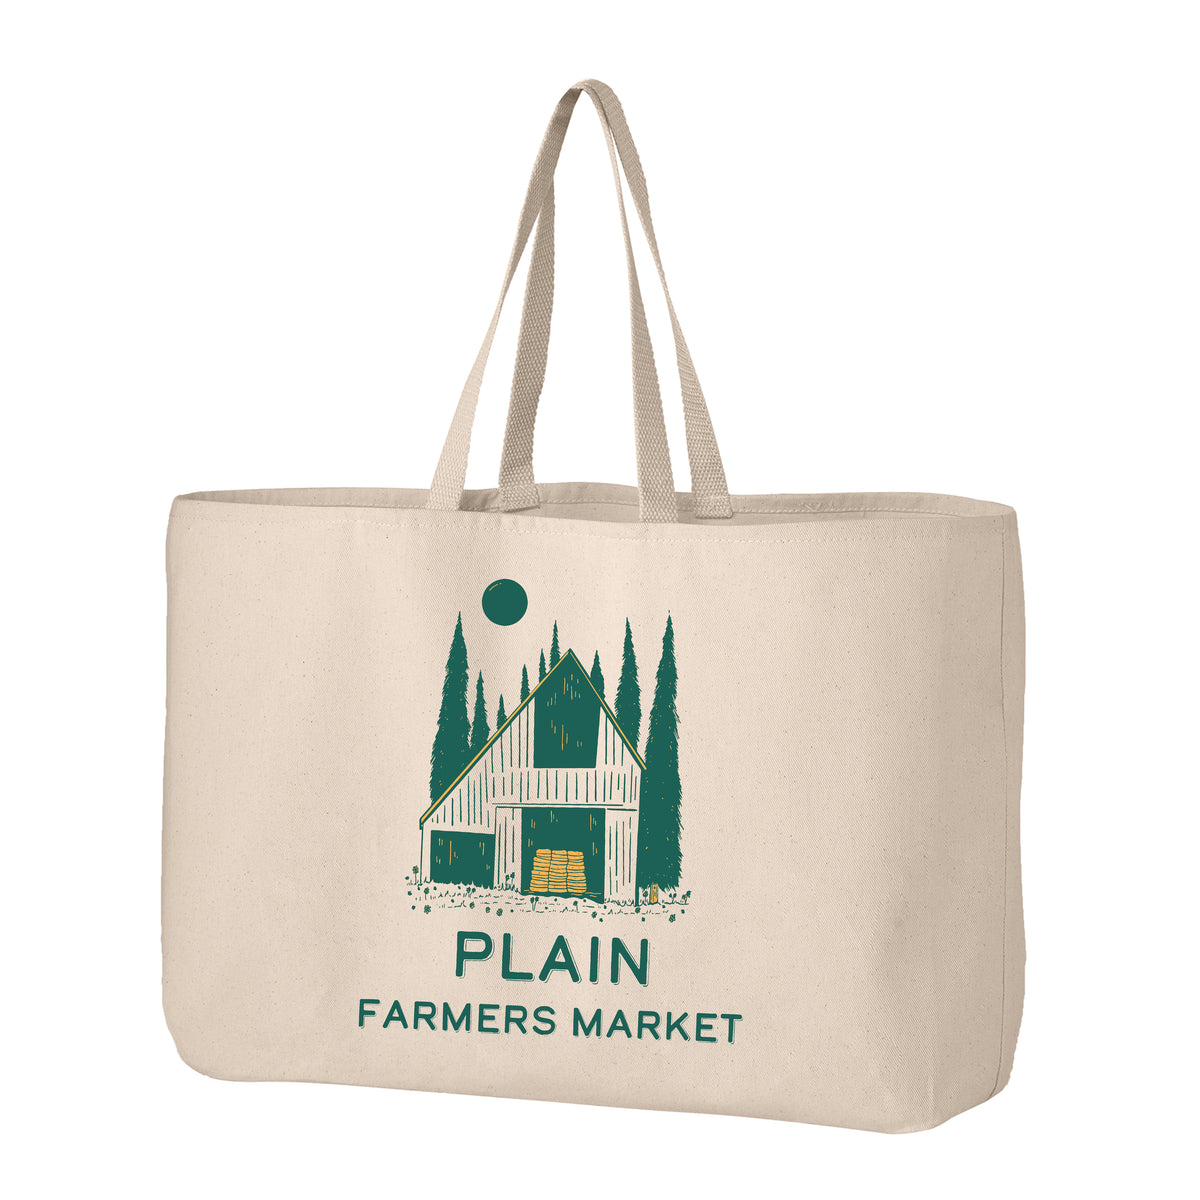 Plain Farmers Market Tote Bag - Jumbo Size